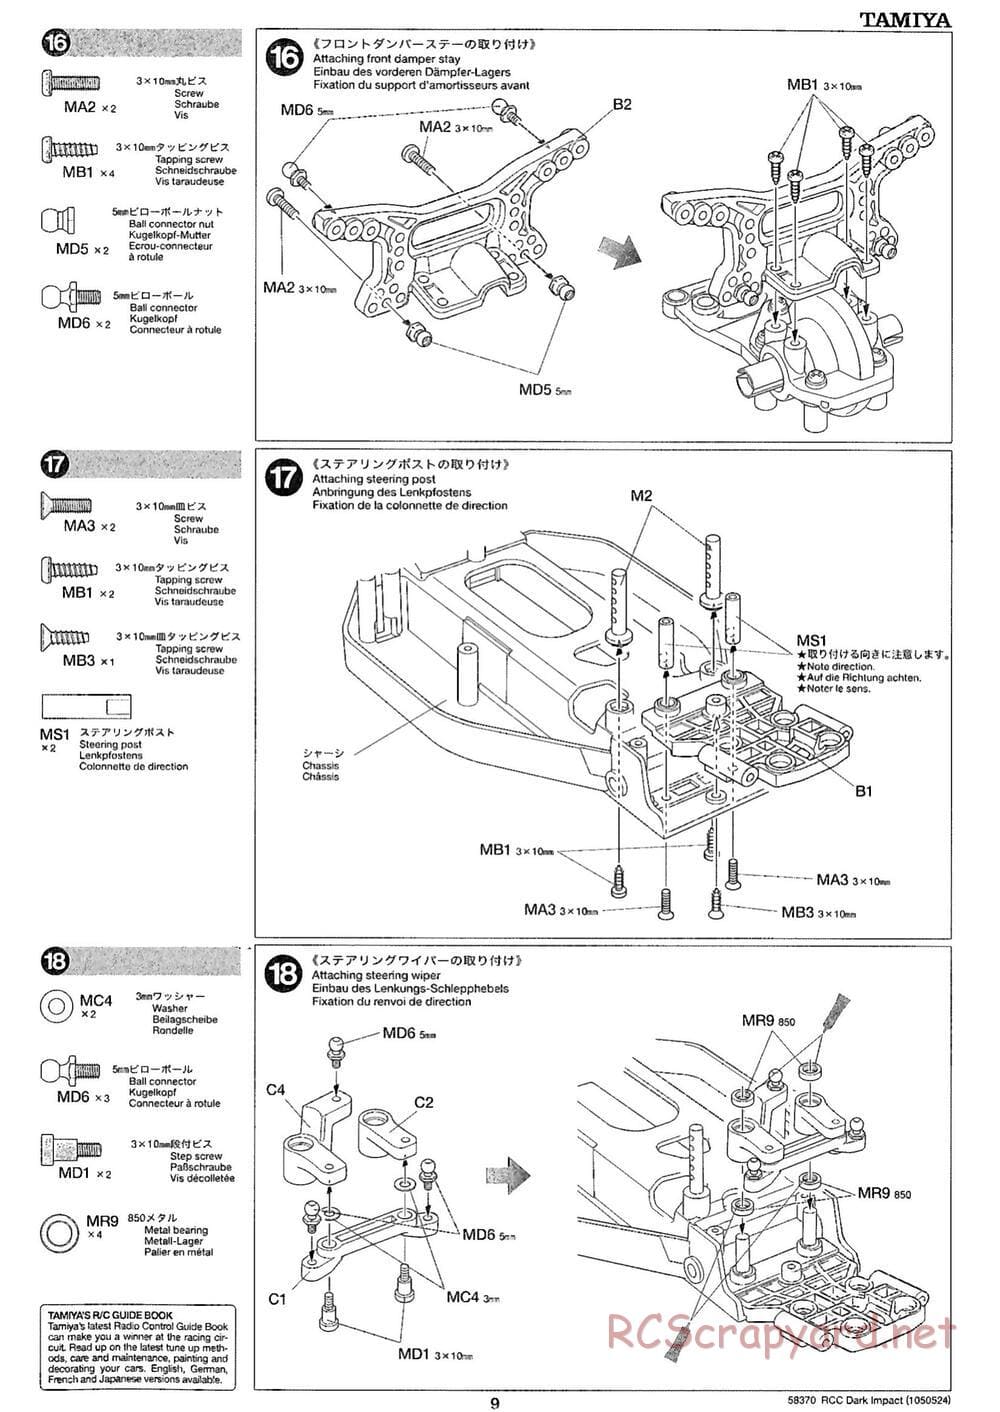 Tamiya - Dark Impact Chassis - Manual - Page 9